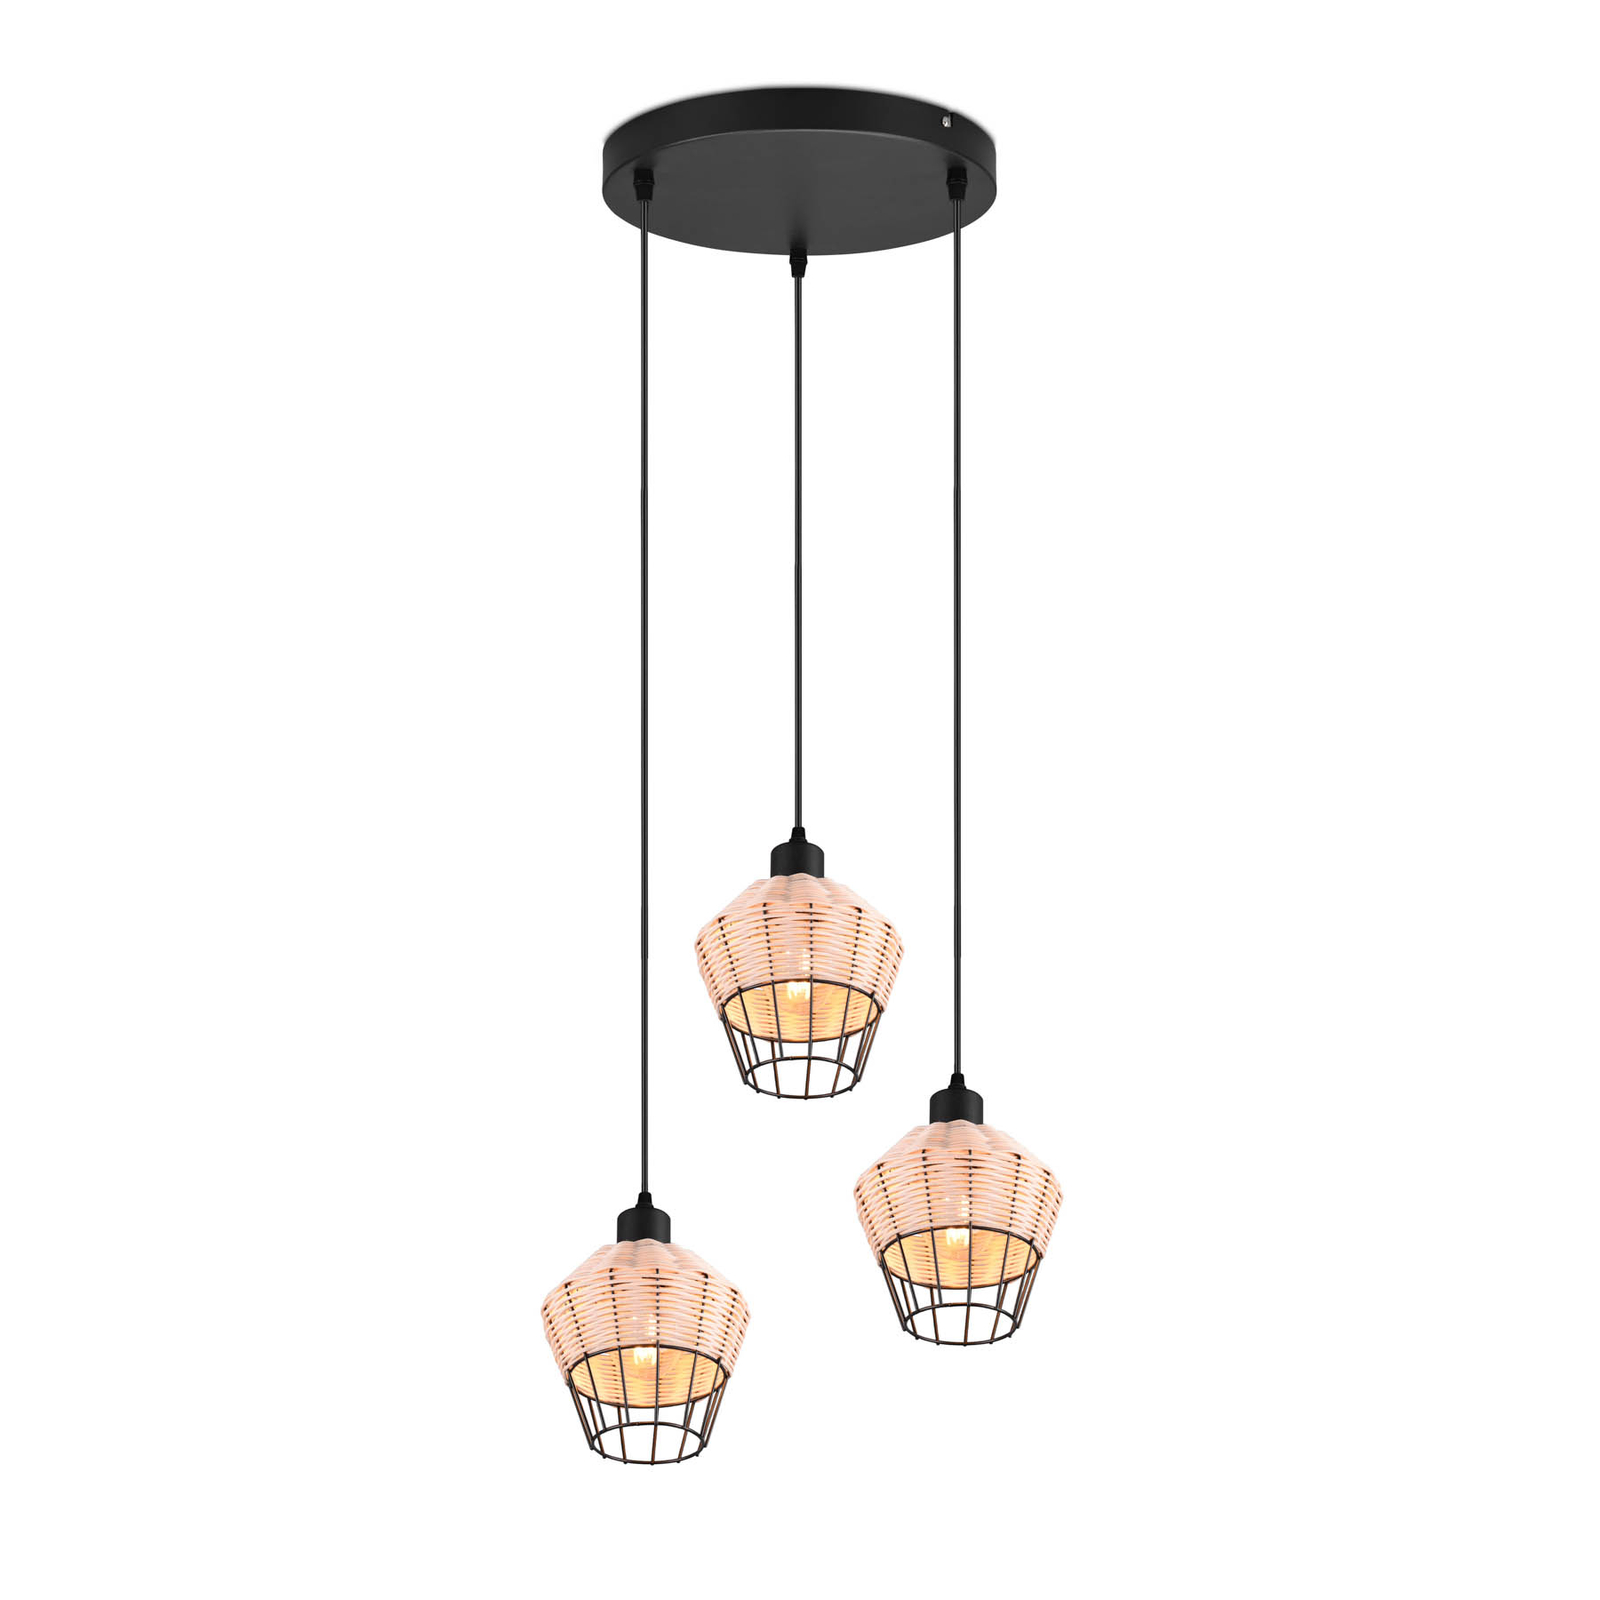 Hanglamp Borka, 3-lamps, rondel, natuur